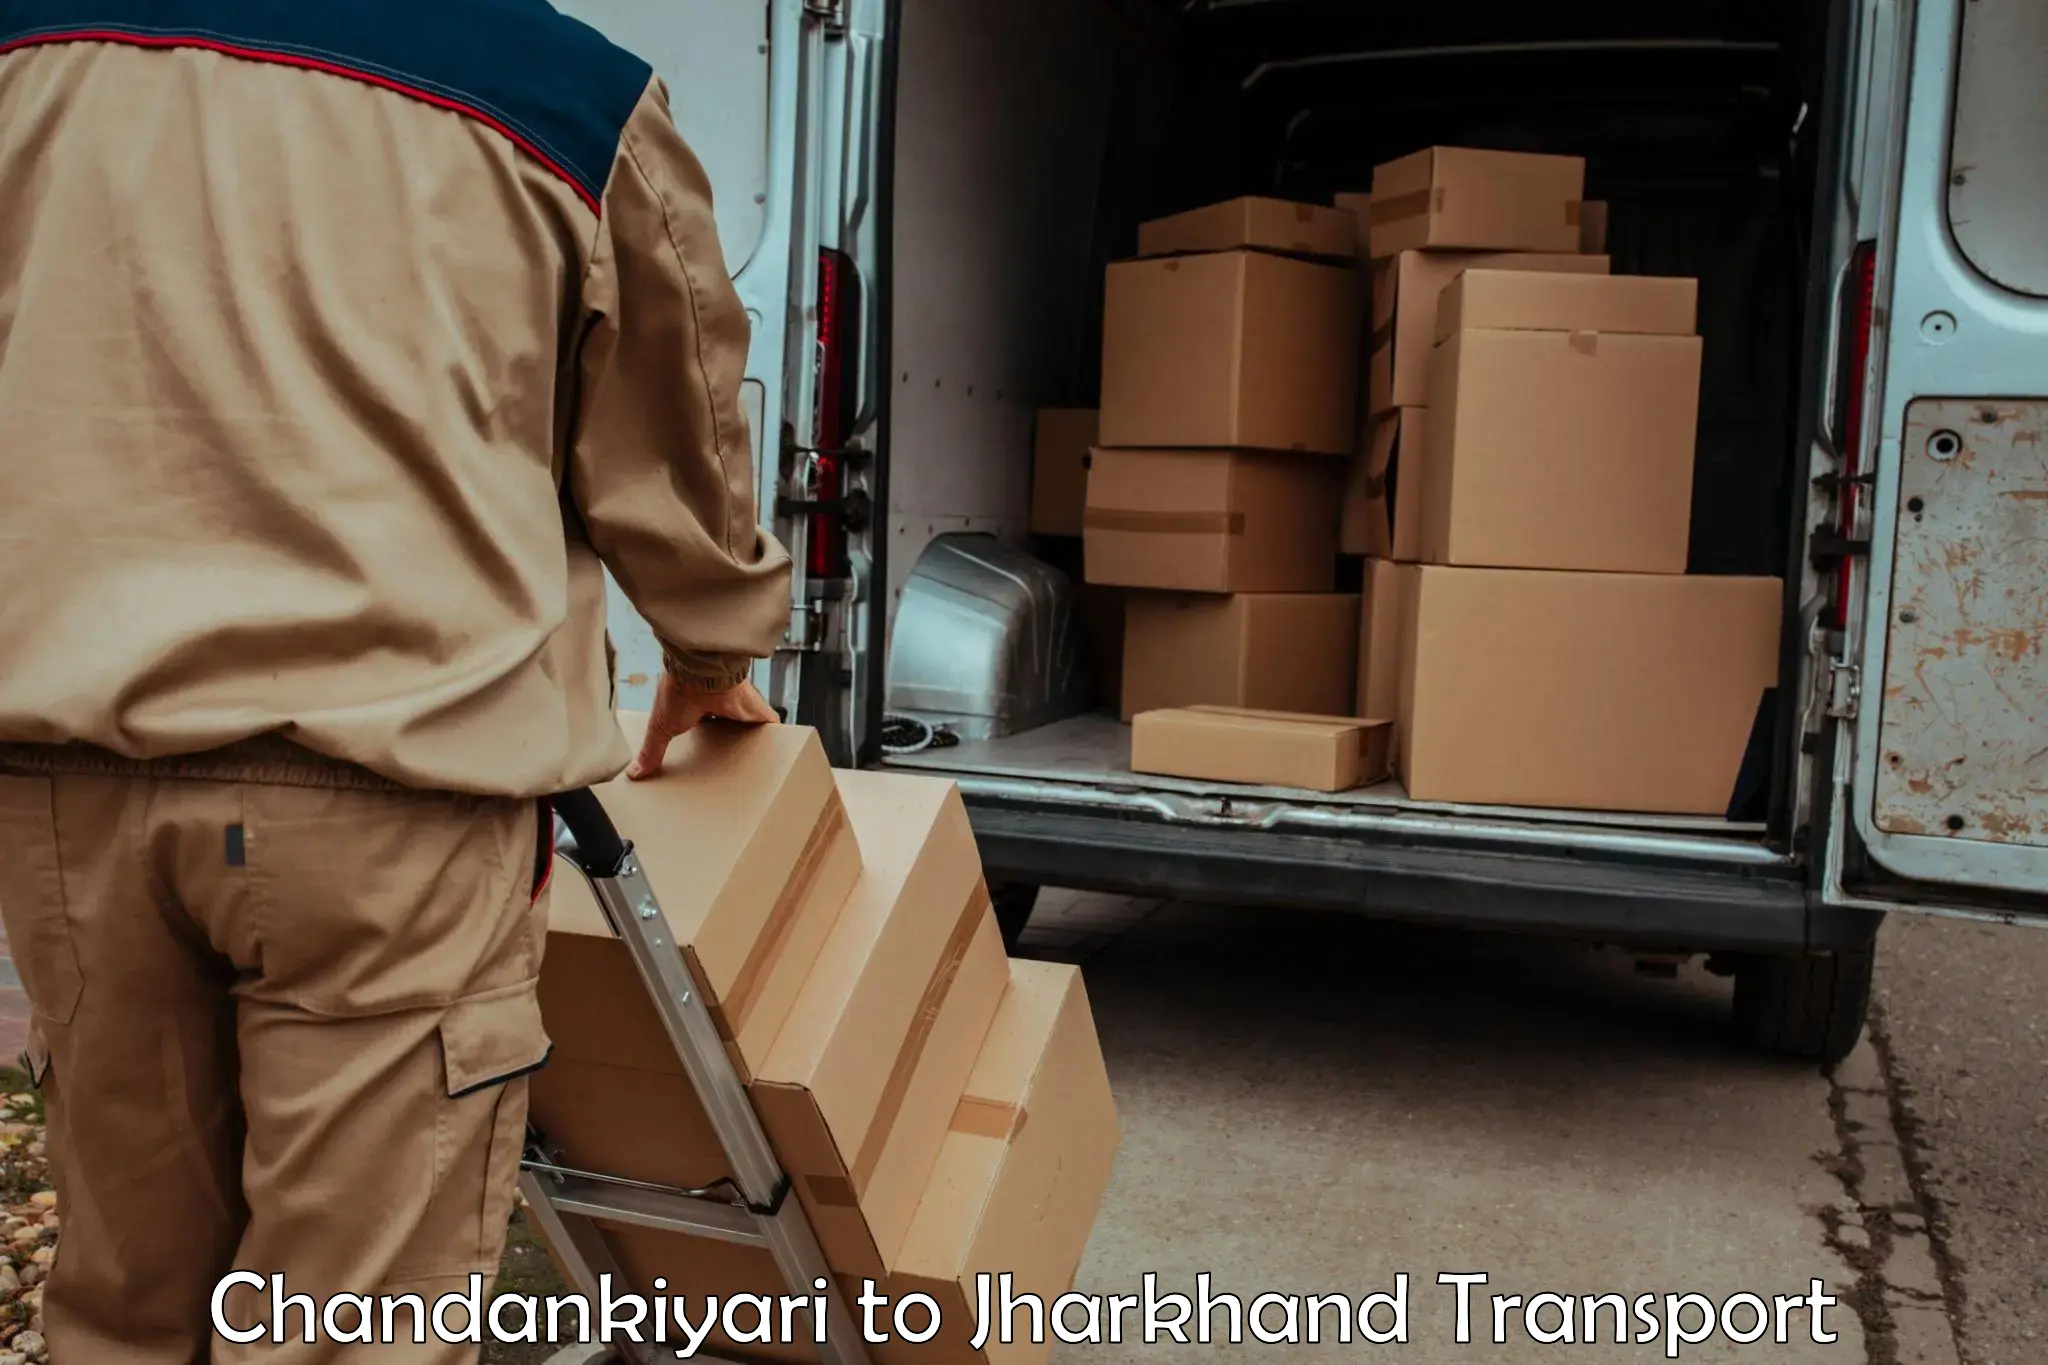 Truck transport companies in India Chandankiyari to Dhalbhumgarh